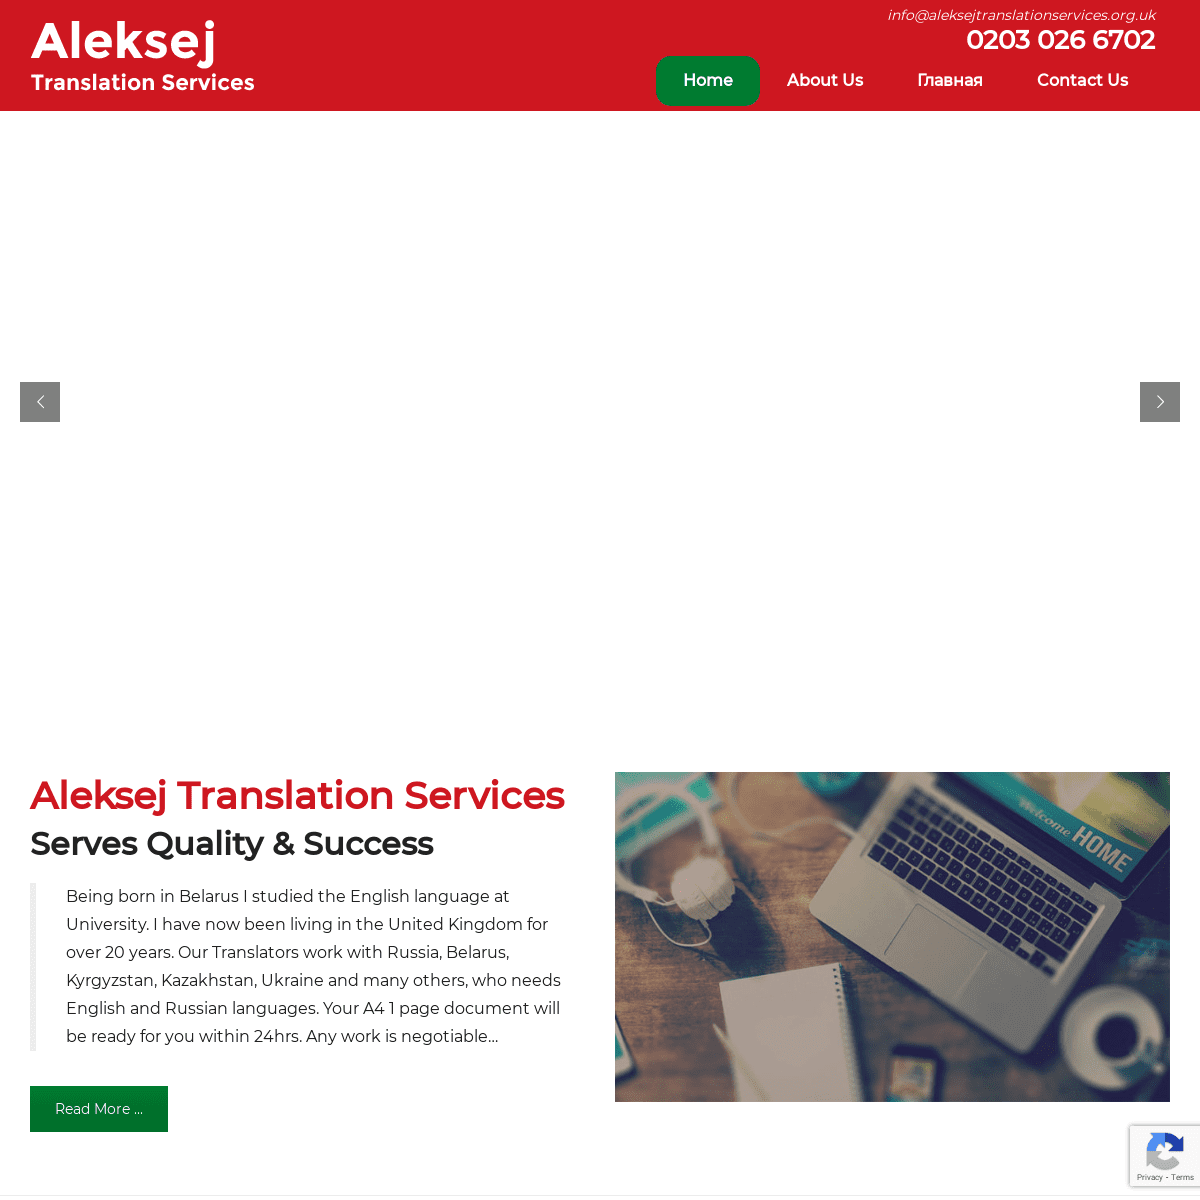 A complete backup of https://aleksejtranslationservices.org.uk